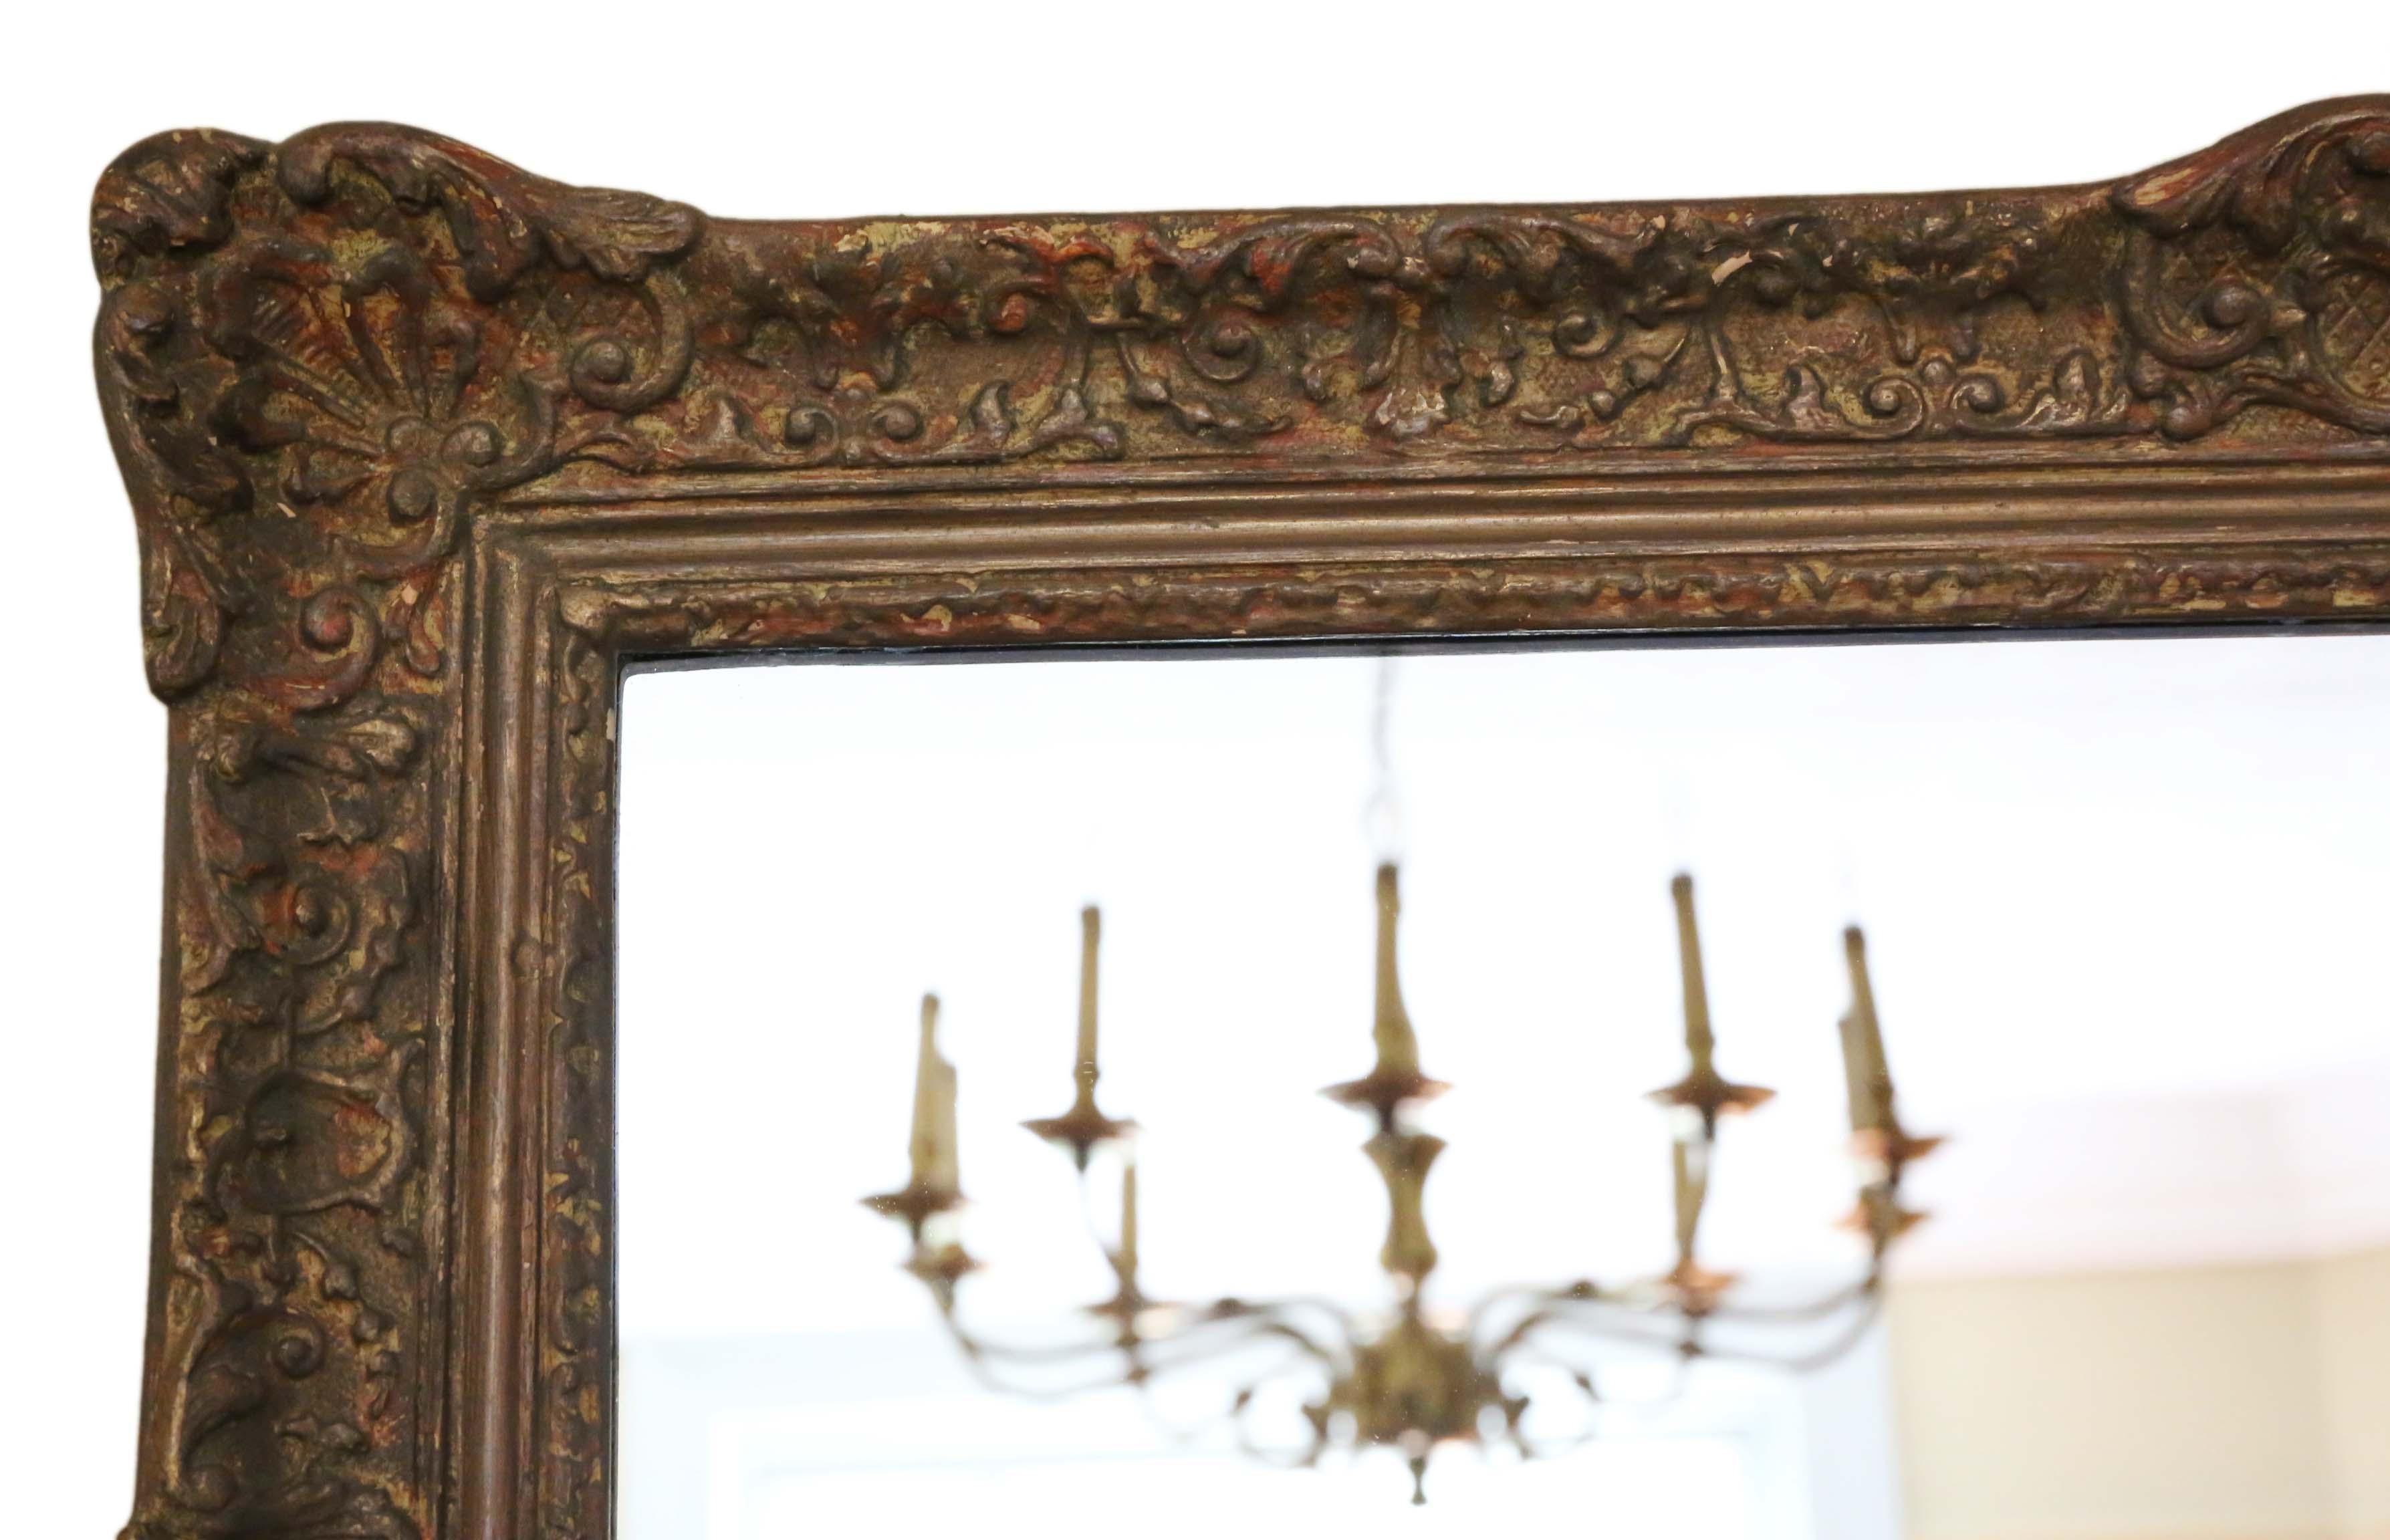 Antiker großer Qualitäts-Wandspiegel aus der Mitte des 20. Jahrhunderts im Louis IVX-Stil.
Kein Holzwurm und keine losen Verbindungen.
Das Glas ist in sehr gutem Zustand (Ersatz) mit einem klaren/scharfen Spiegelbild.
Maximale Gesamtabmessungen: